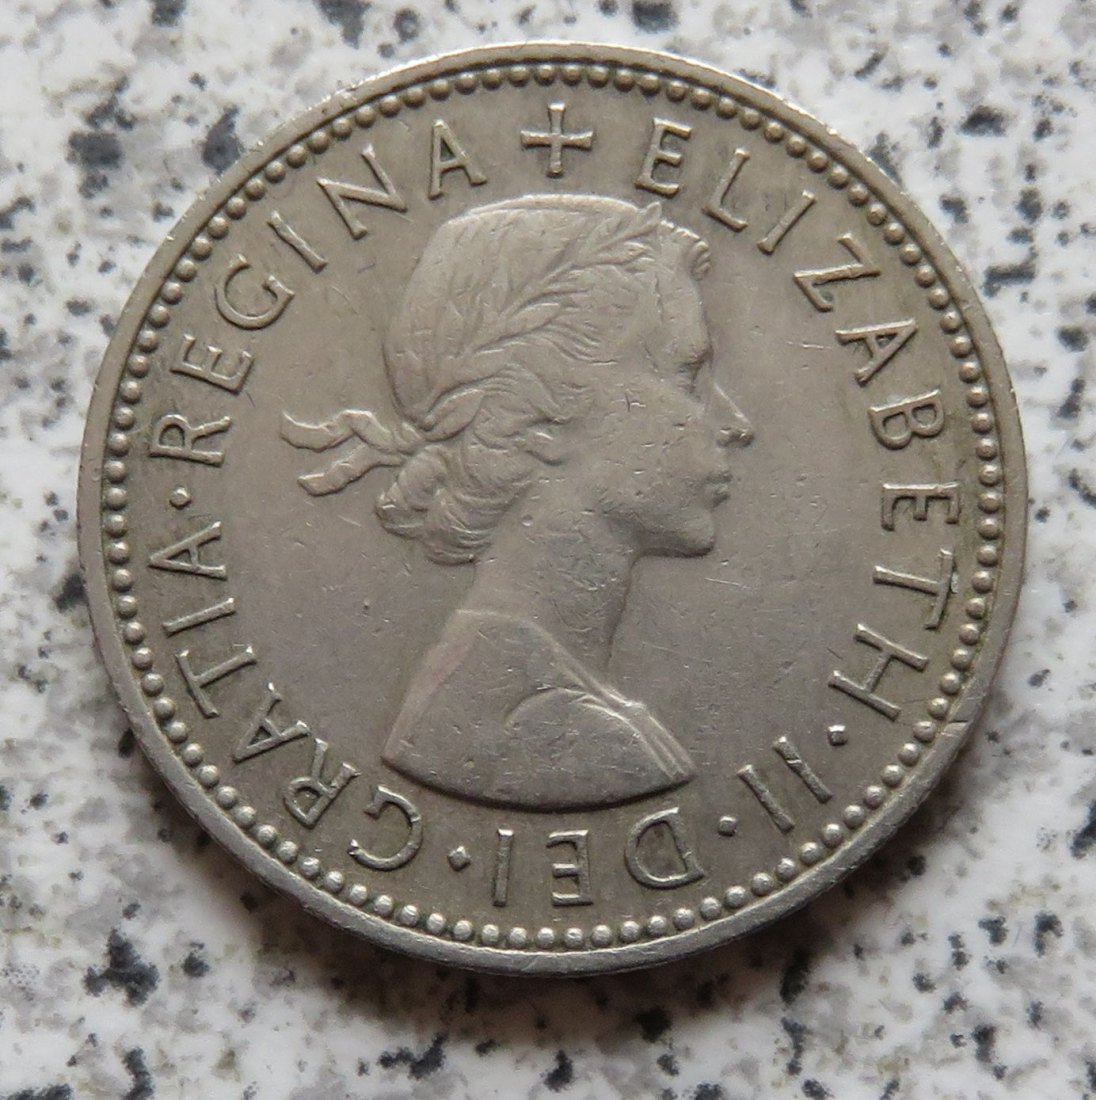  Großbritannien 1 Shilling 1956, Schottisch   